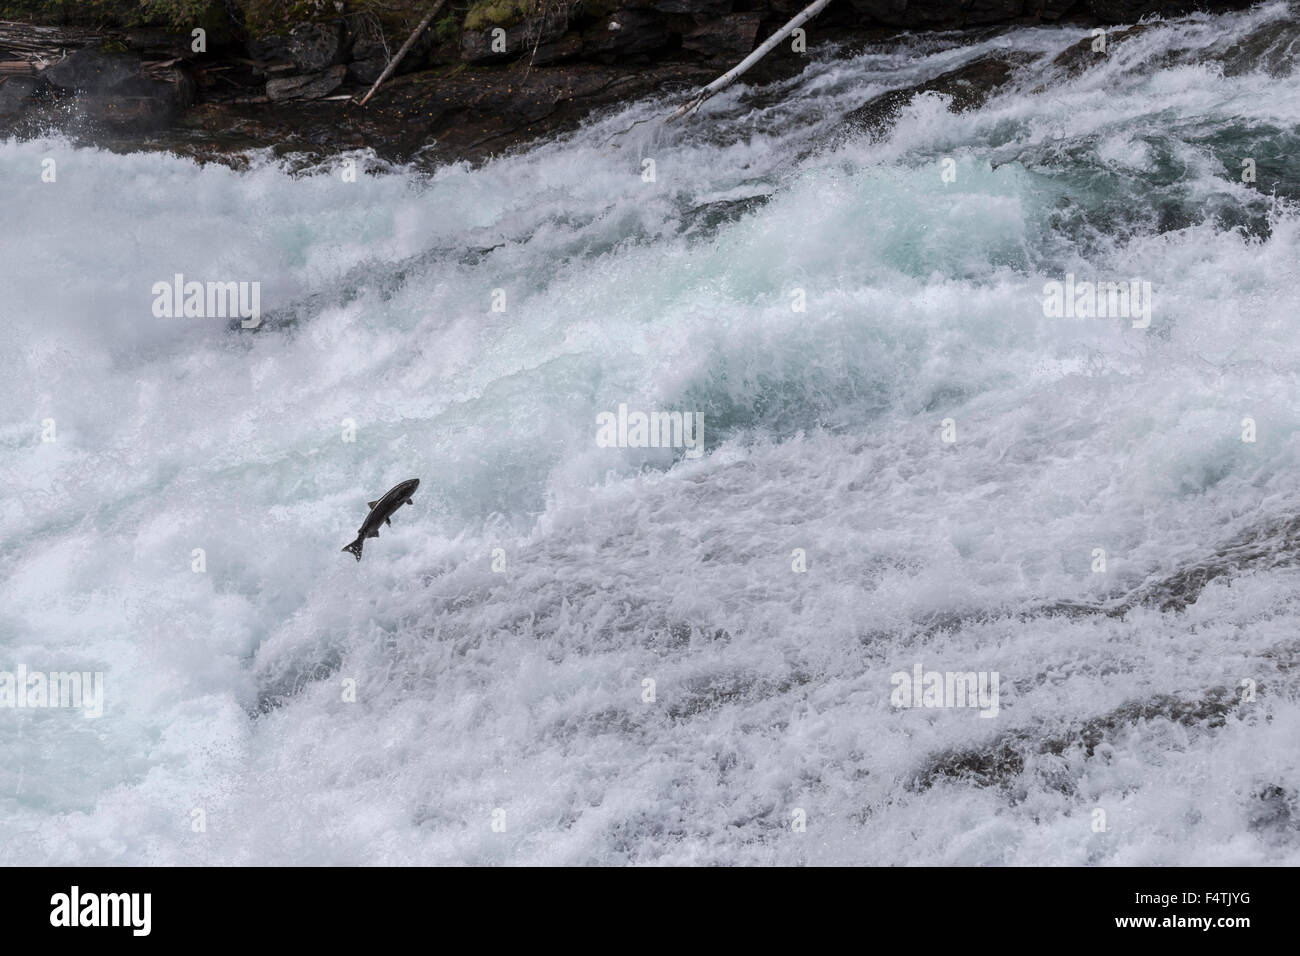 Le saumon quinnat d'essayer de sauter jusqu'Bailey's, chute rapidement en cascade dans le parc provincial Wells Gray, British Columbia, Canada. Banque D'Images